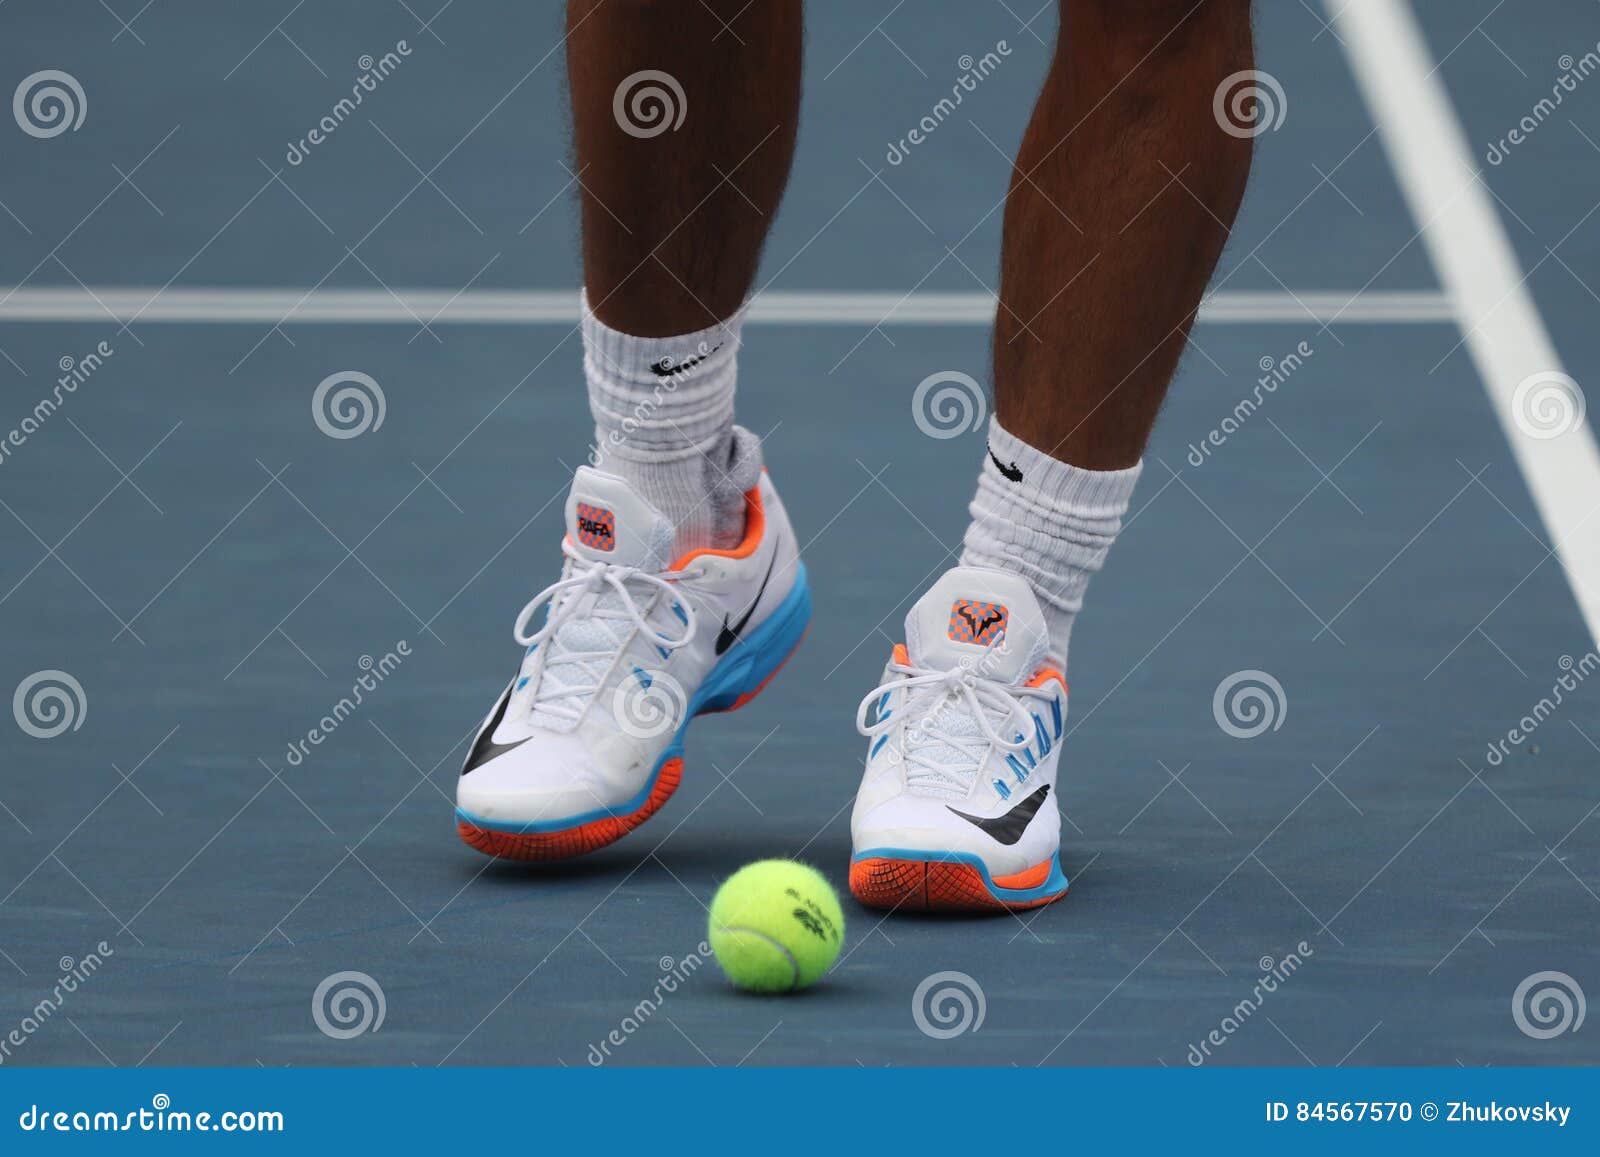 Sophie Het beste Verkeerd Grand Slam Champion Rafael Nadal of Spain Wears Custom Nike Tennis Shoes  during Practice for US Open 2016 Editorial Image - Image of players, rafa:  84567570